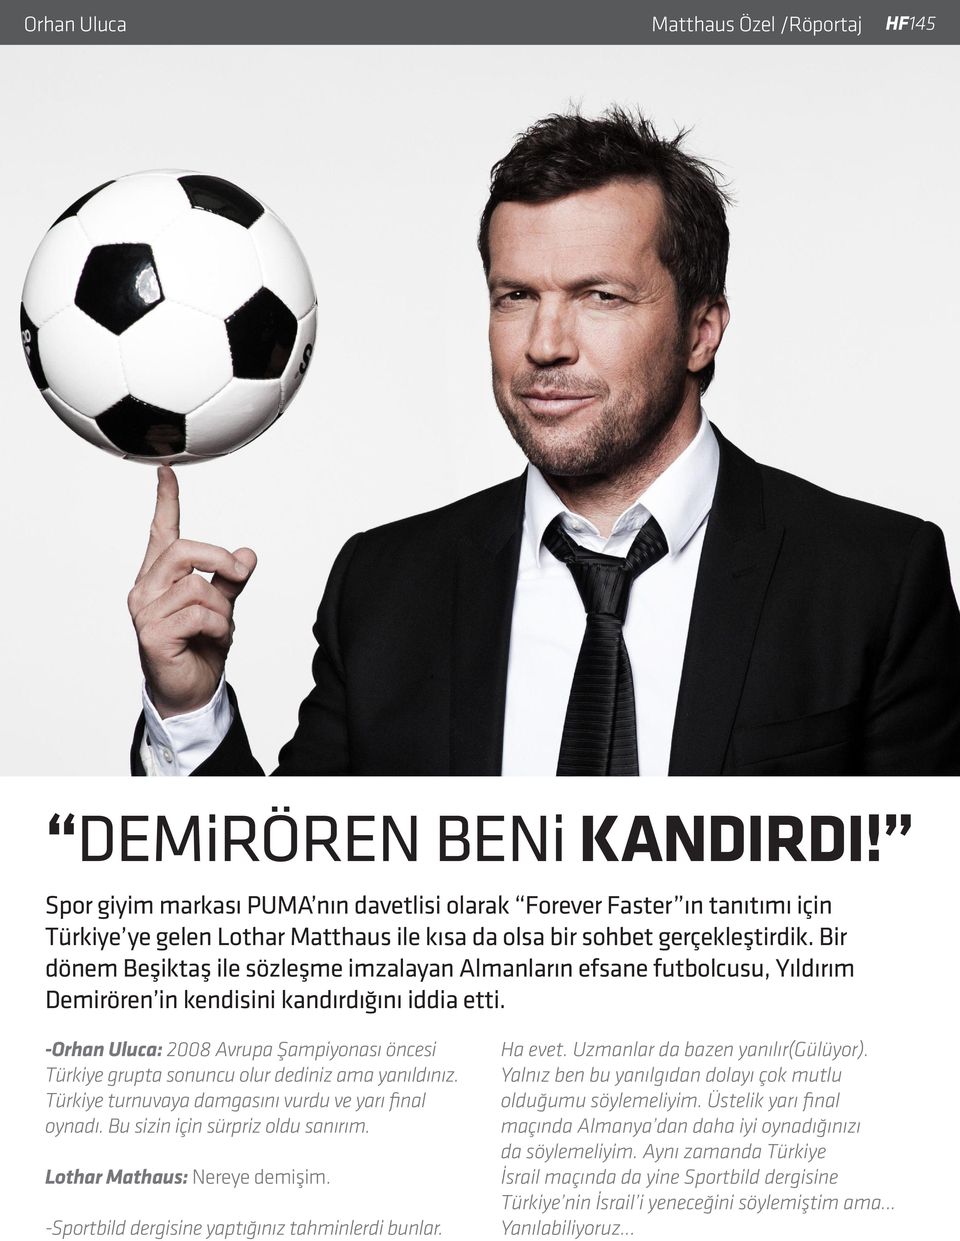 Bir dönem Beşiktaş ile sözleşme imzalayan Almanların efsane futbolcusu, Yıldırım Demirören in kendisini kandırdığını iddia etti.